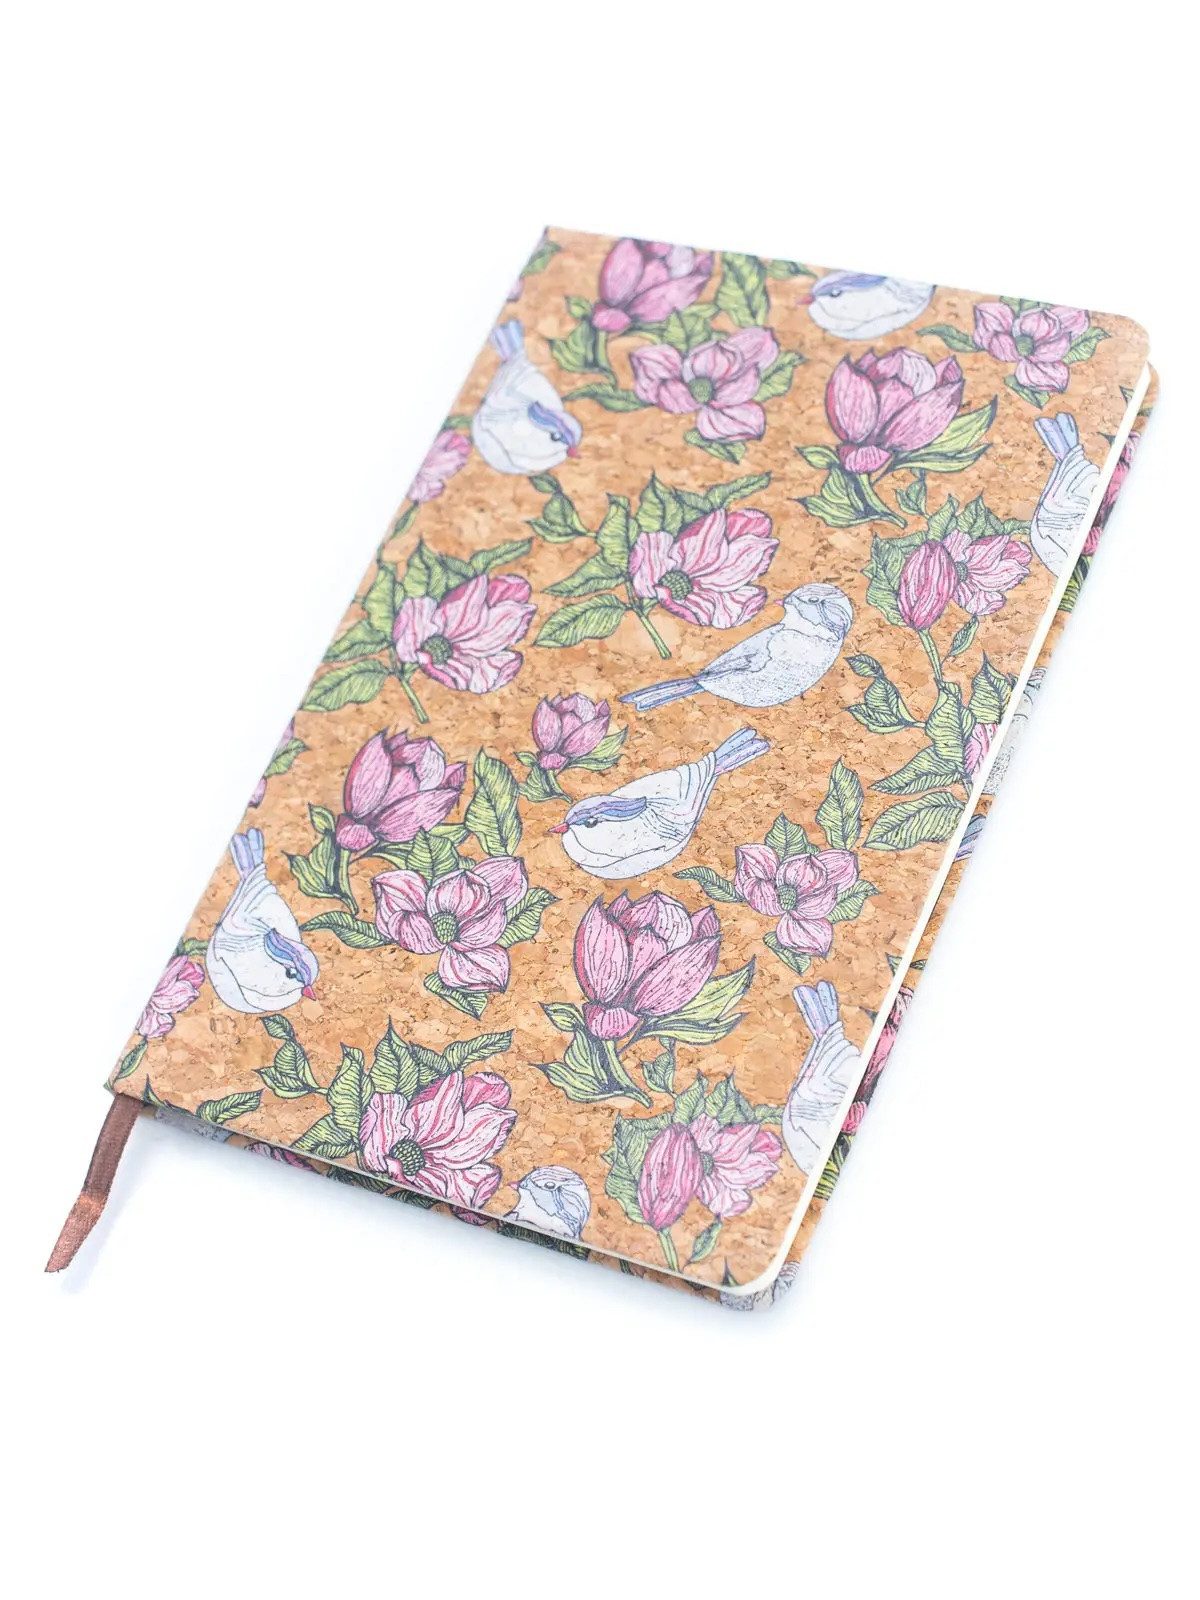 LK Trend & Style Notizbuch aus Naturkork wunderschöne Florale Motive, Bonuspunkte für diese hübschen Druckdetails